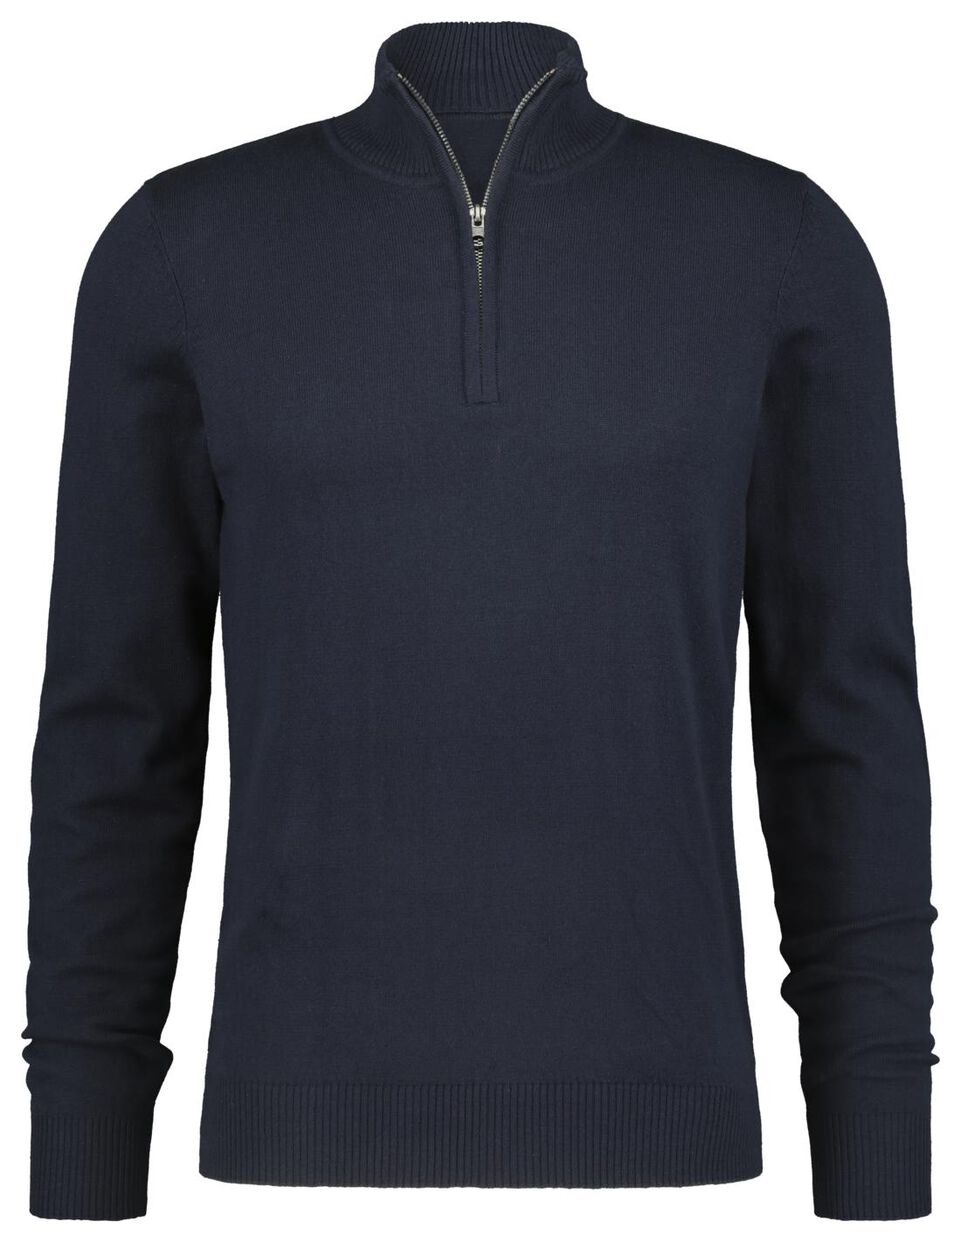 men's sweater zip dark blue - HEMA